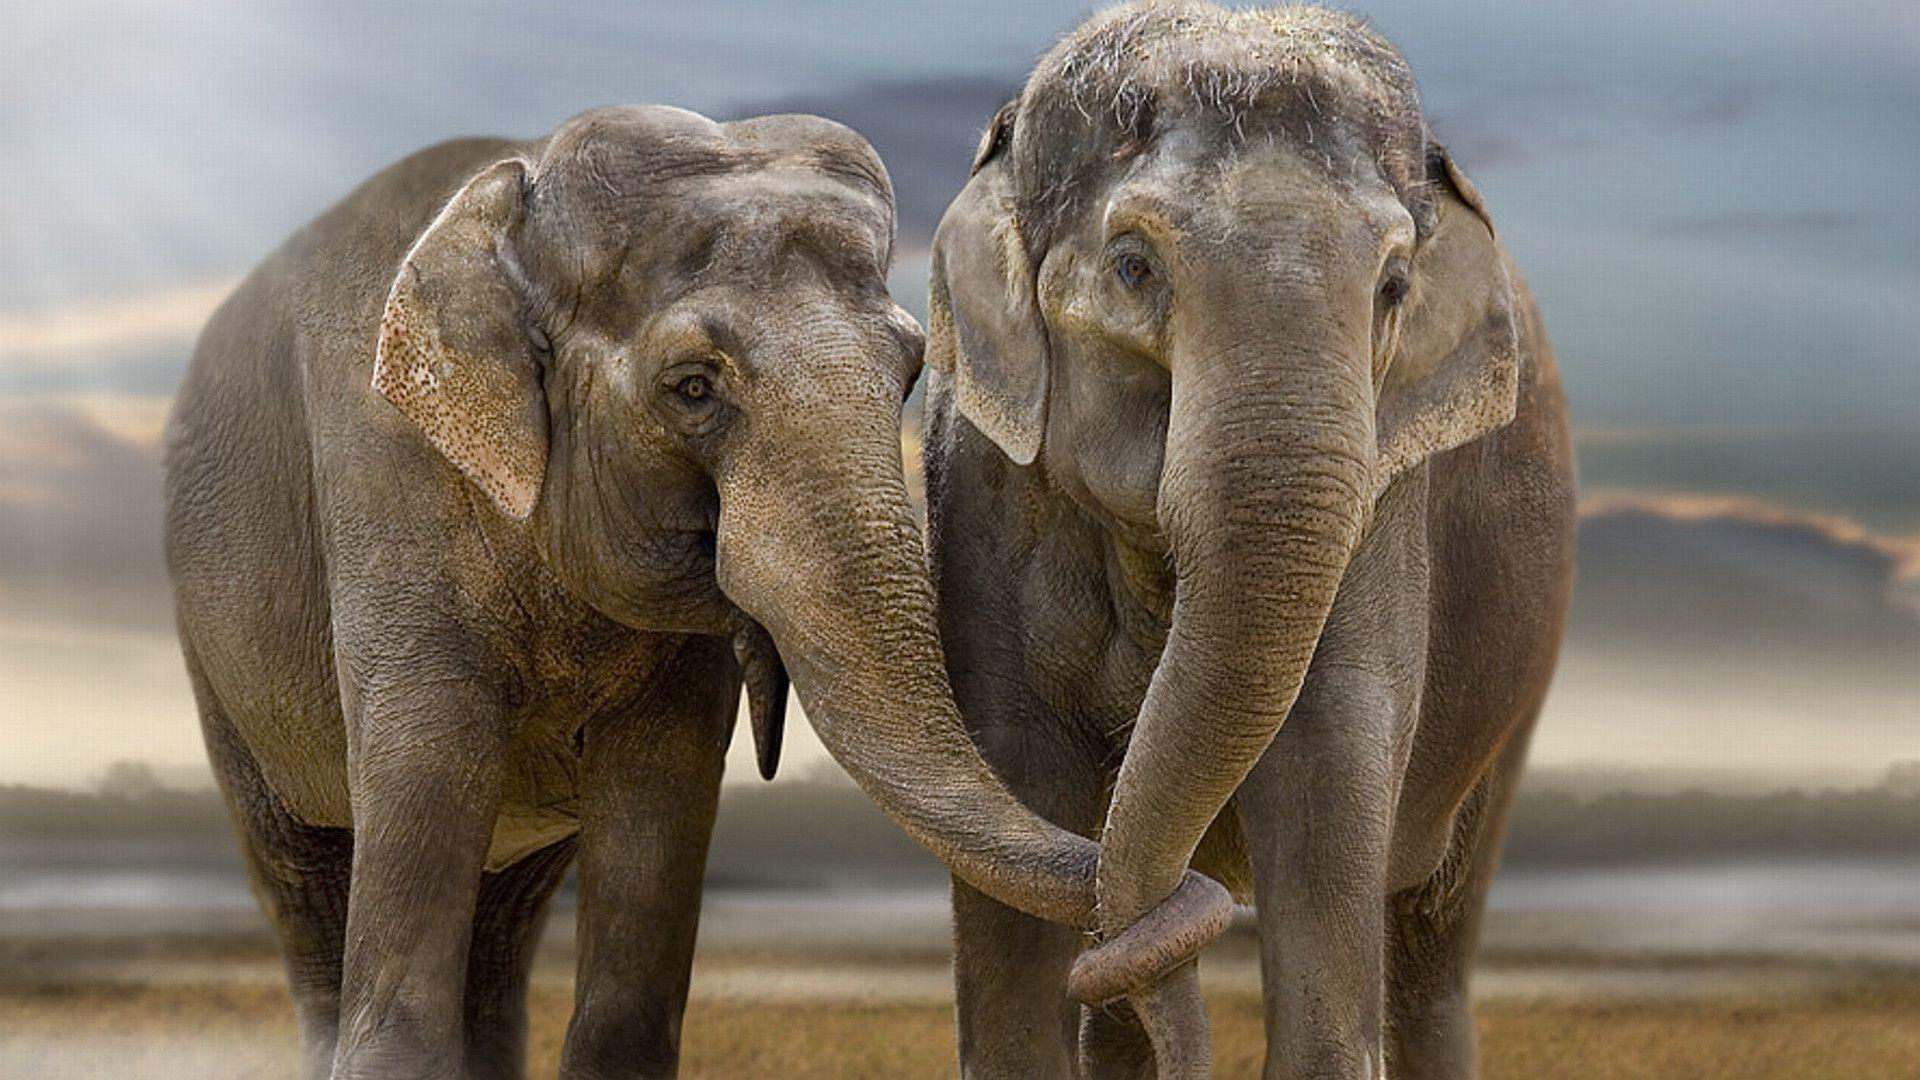 Cute Elephant desktop Wallpaper Pics free download